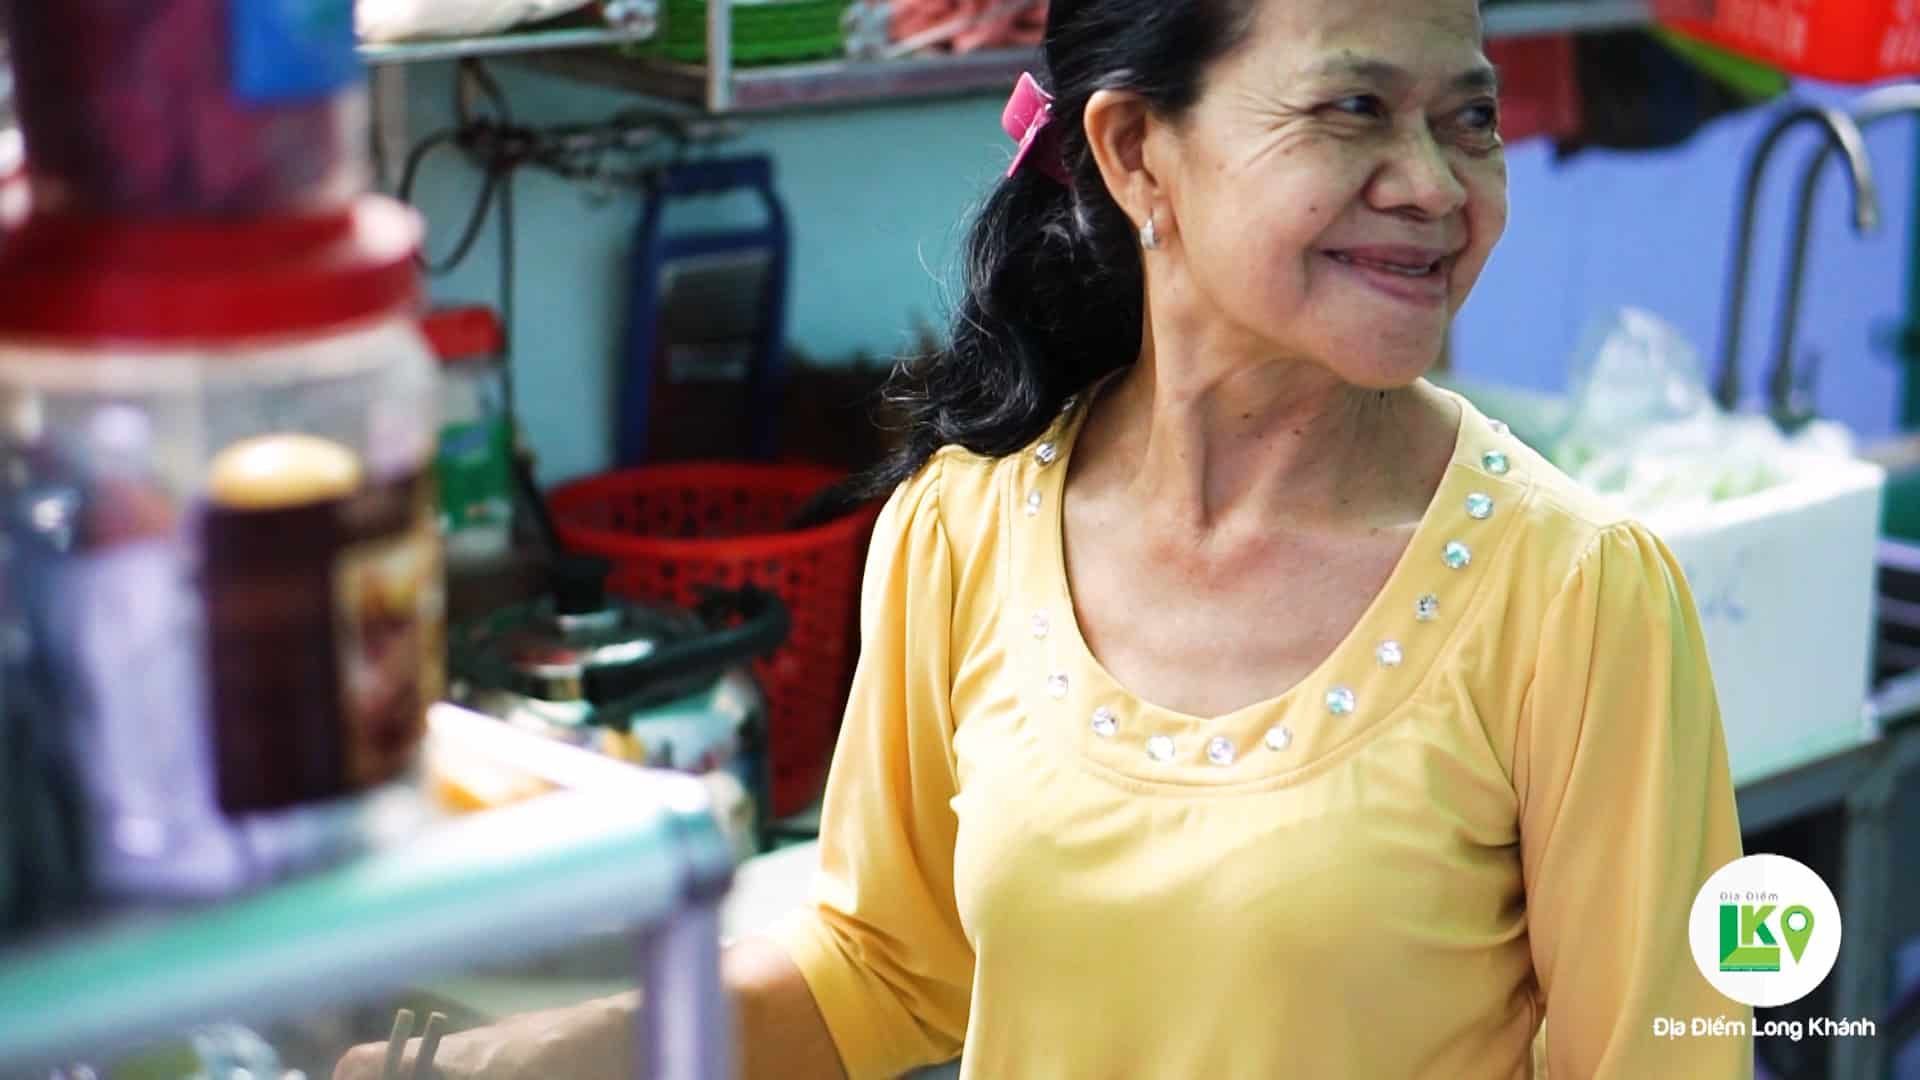 Mì Bà Thành – chỗ bán mì gói duy nhất ở Long Khánh